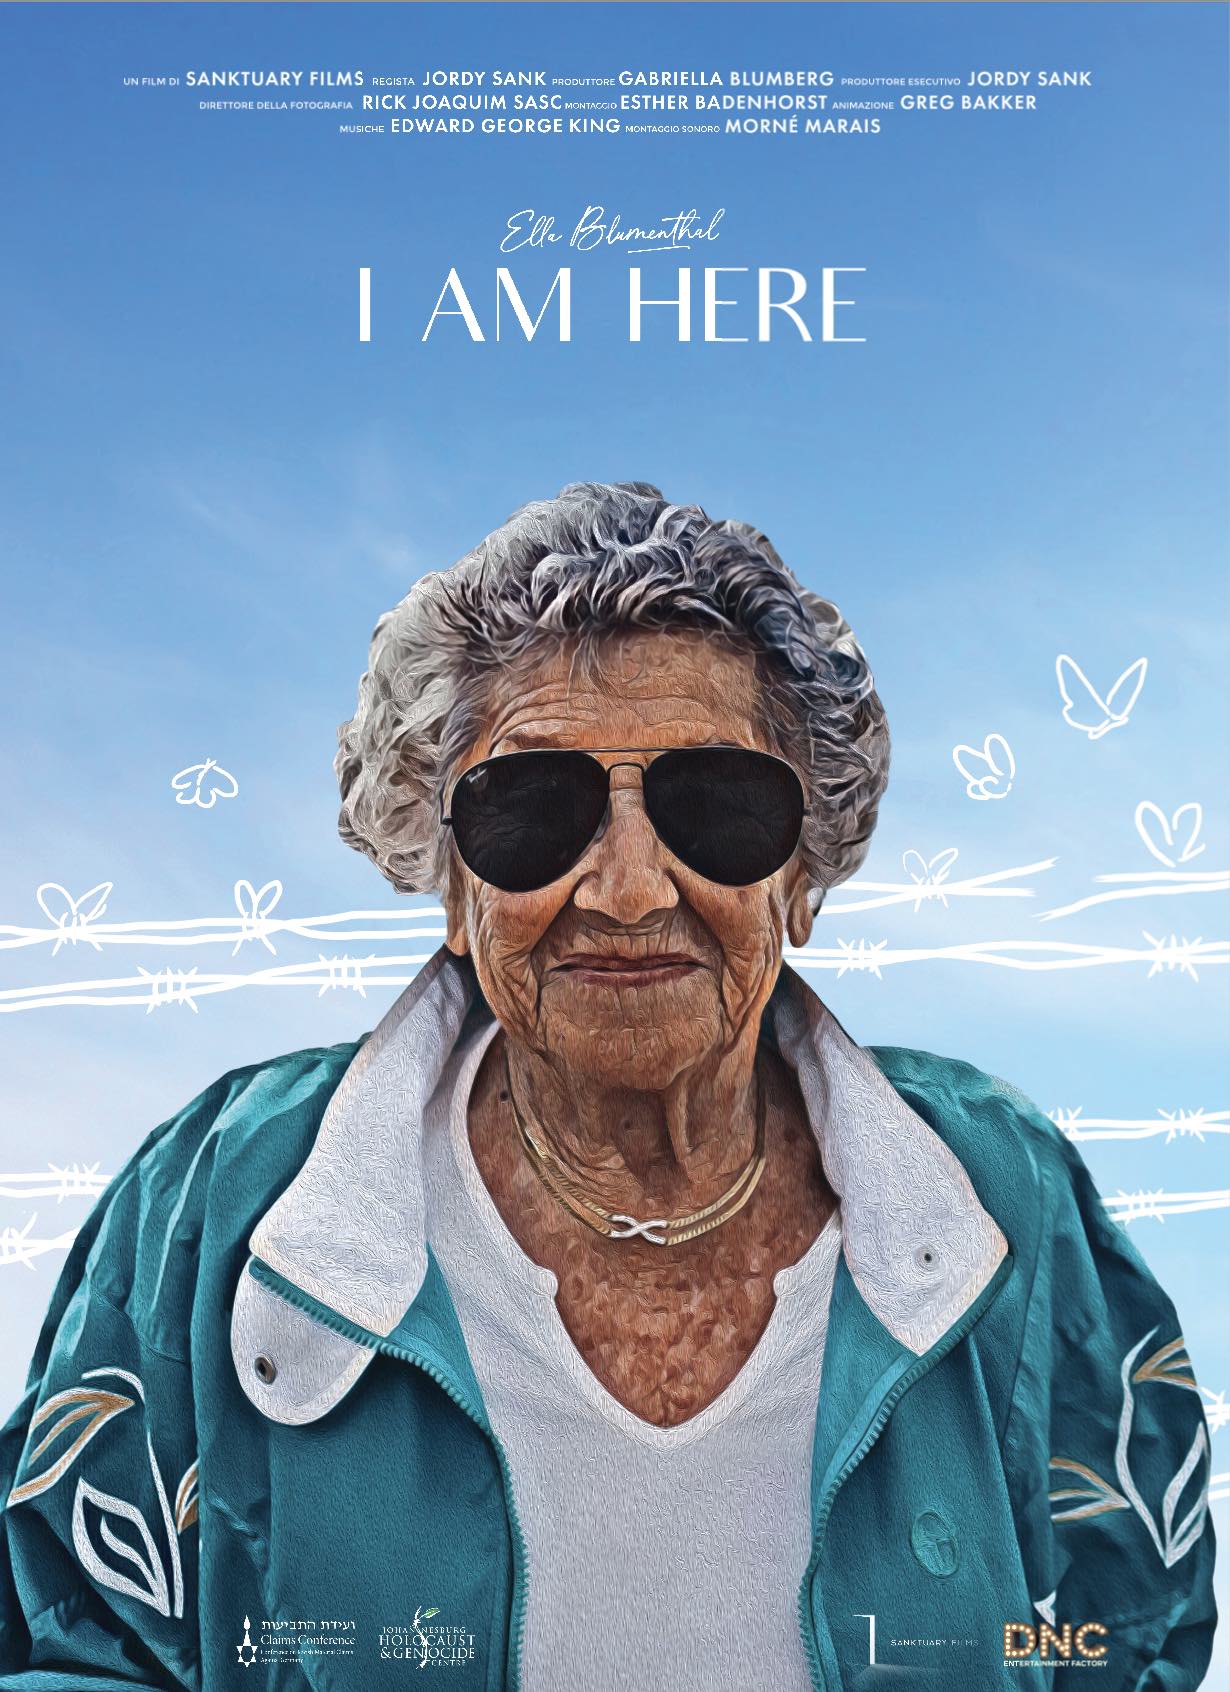 Il poster del film I am here, di Jordy Sank